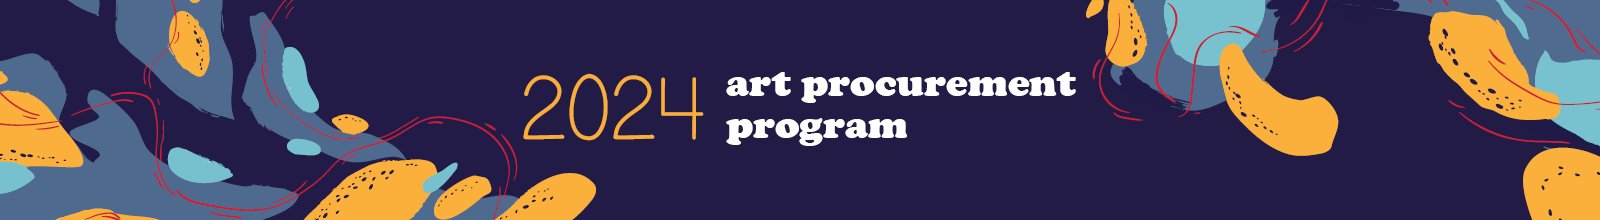 Text that says 2024 Art Procurement Program